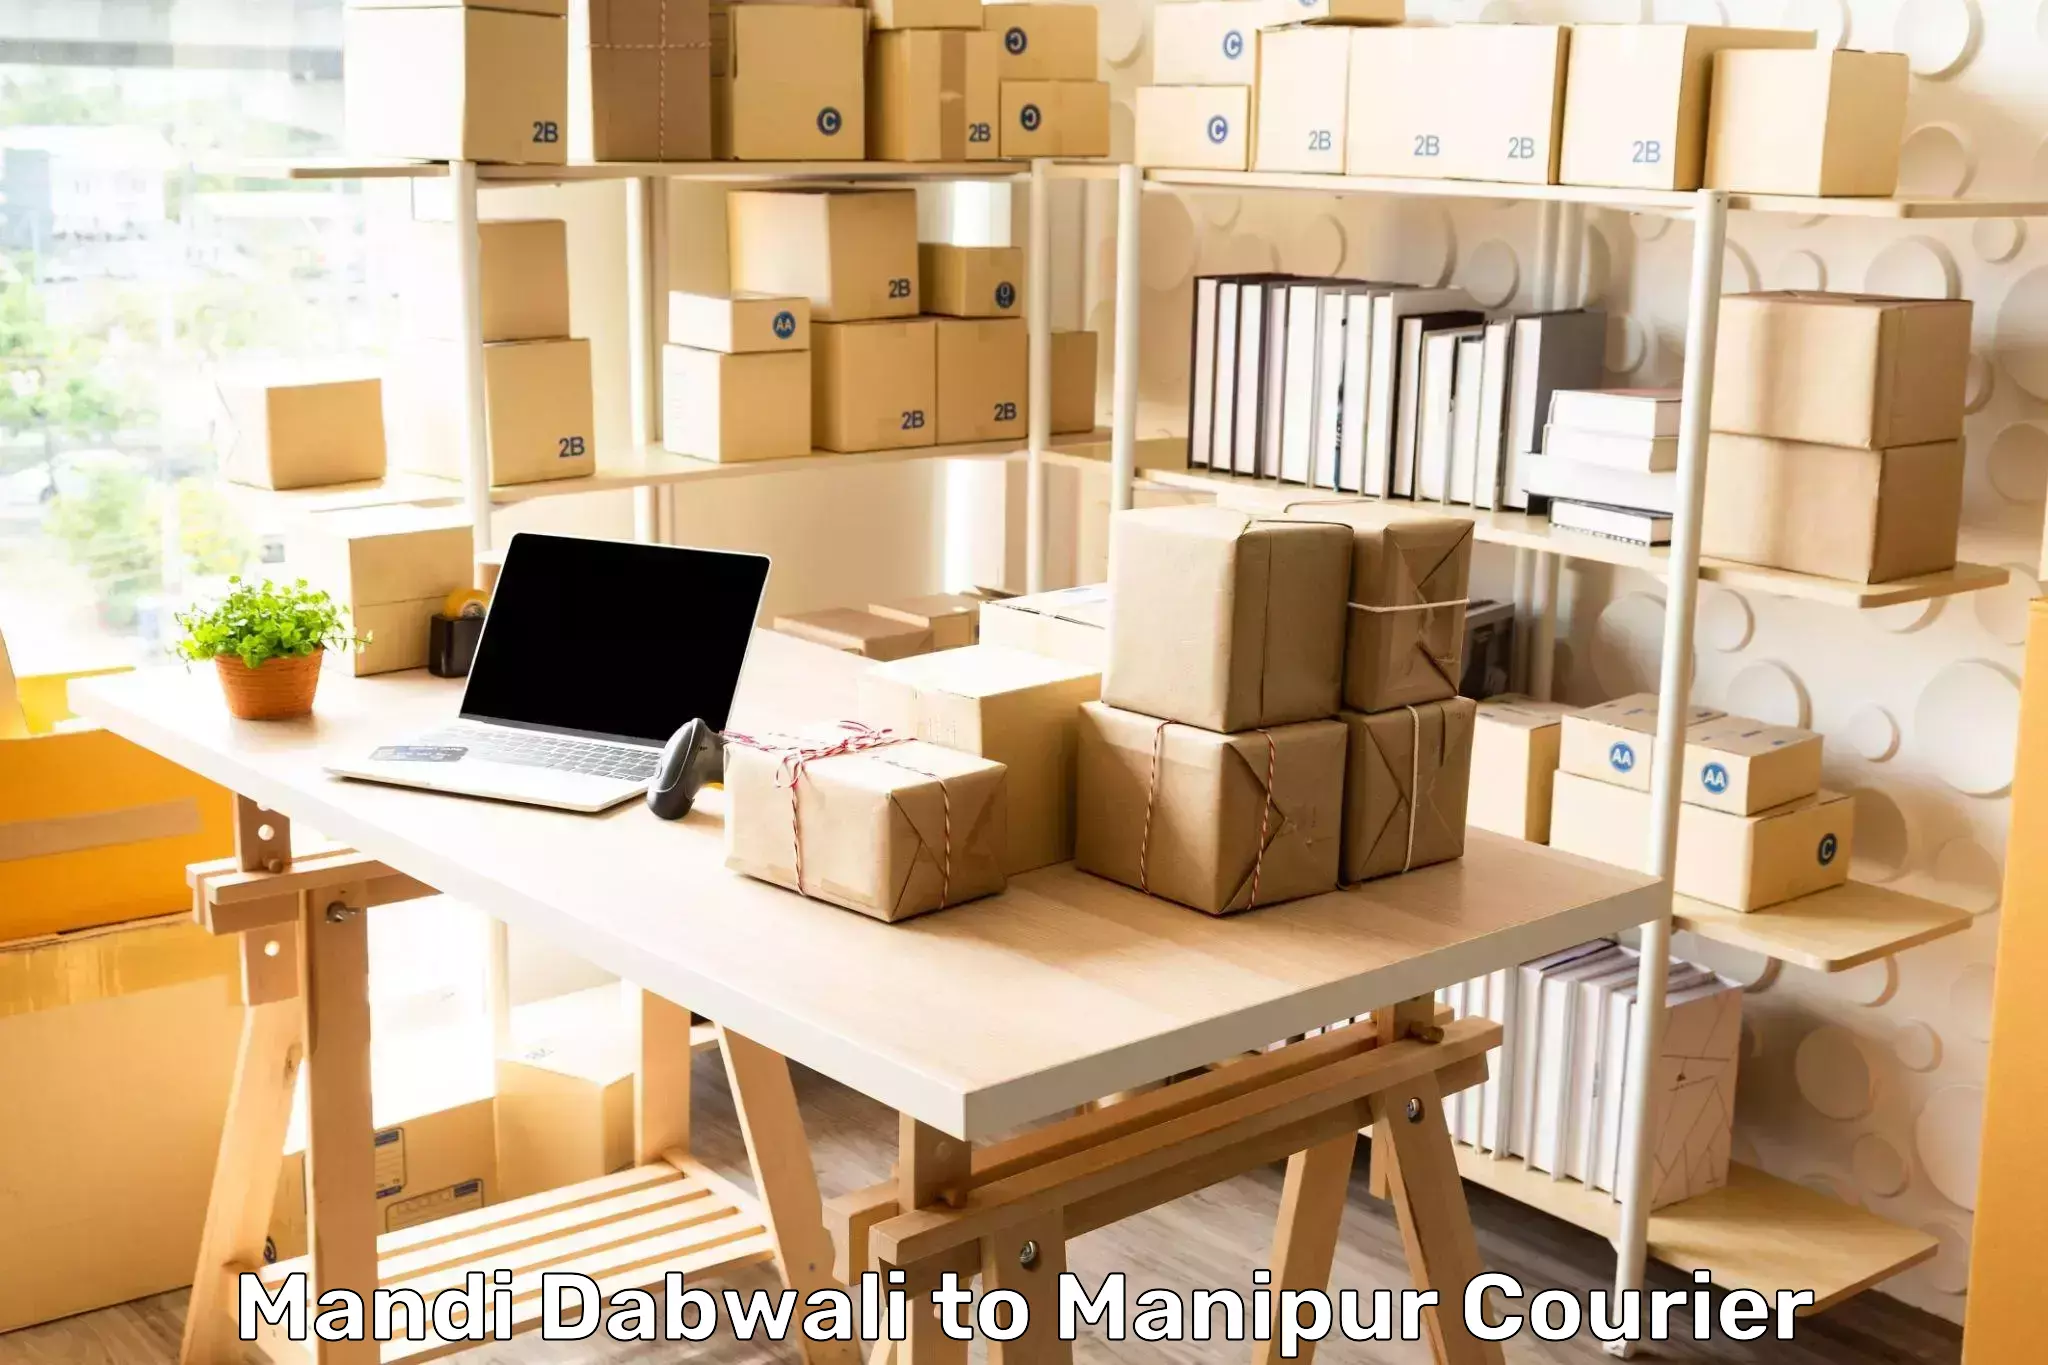 User-friendly delivery service in Mandi Dabwali to Senapati